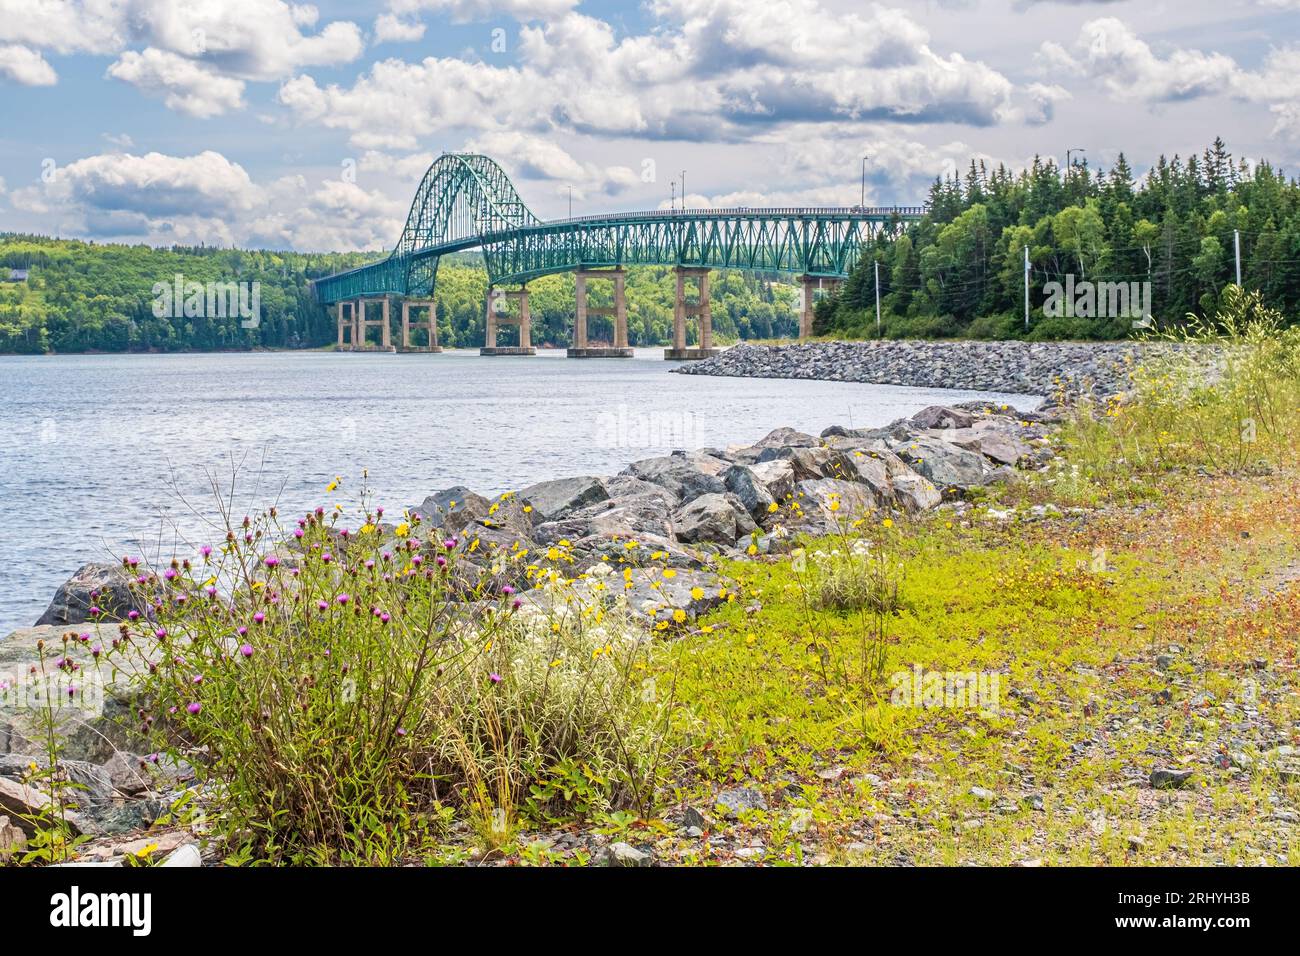 Le pont Seal Island, dans le comté de Victoria, en Nouvelle-Écosse, est le troisième pont le plus long de la province. Le pont de conception de voûte plantaire traverse les grands bras Banque D'Images